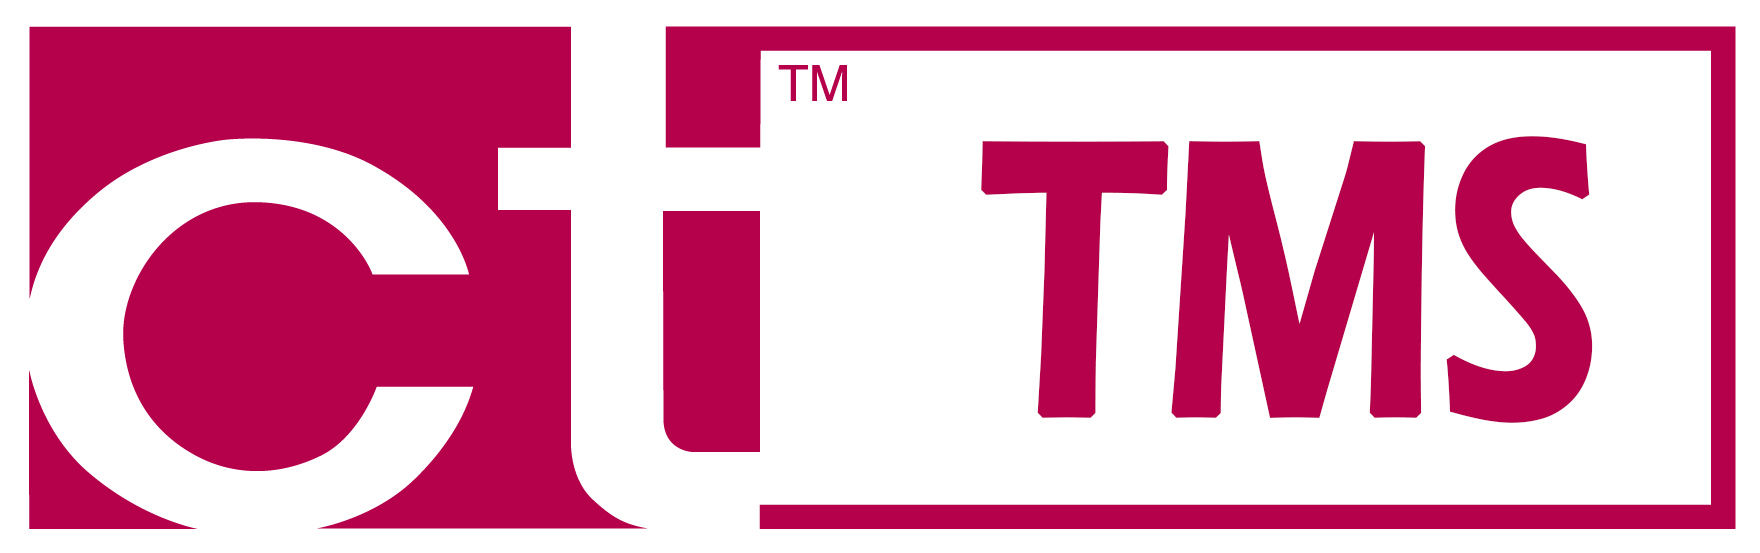 CT Transportation Management System logo